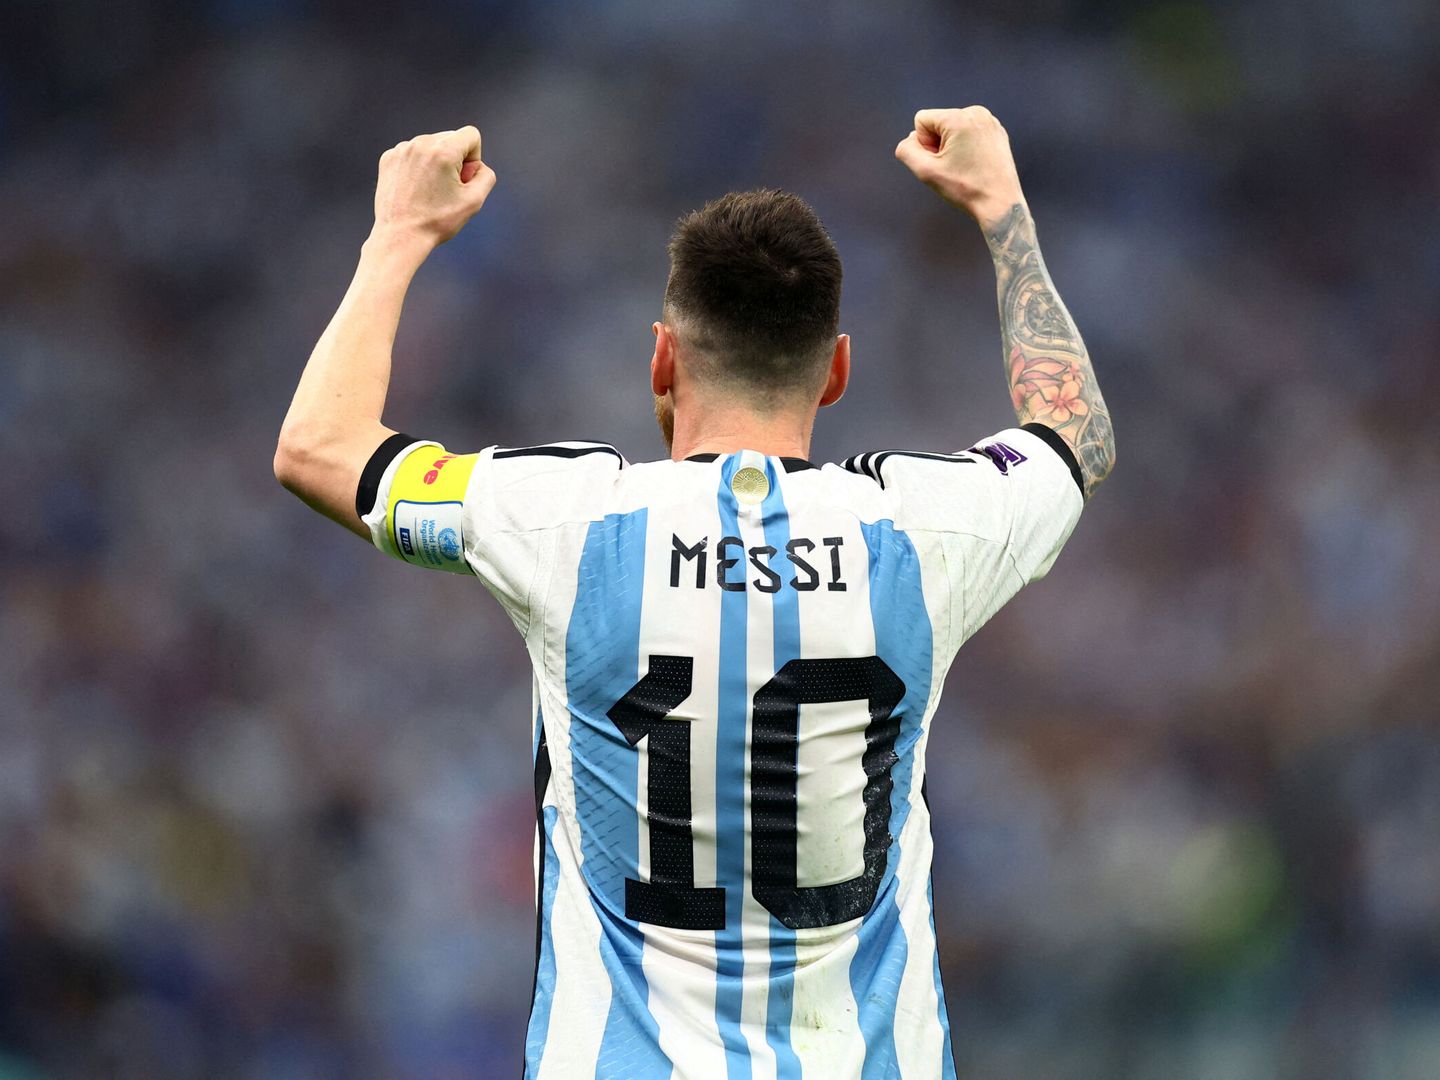 Messi levanta los brazos tras clasificarse para la final del Mundial.